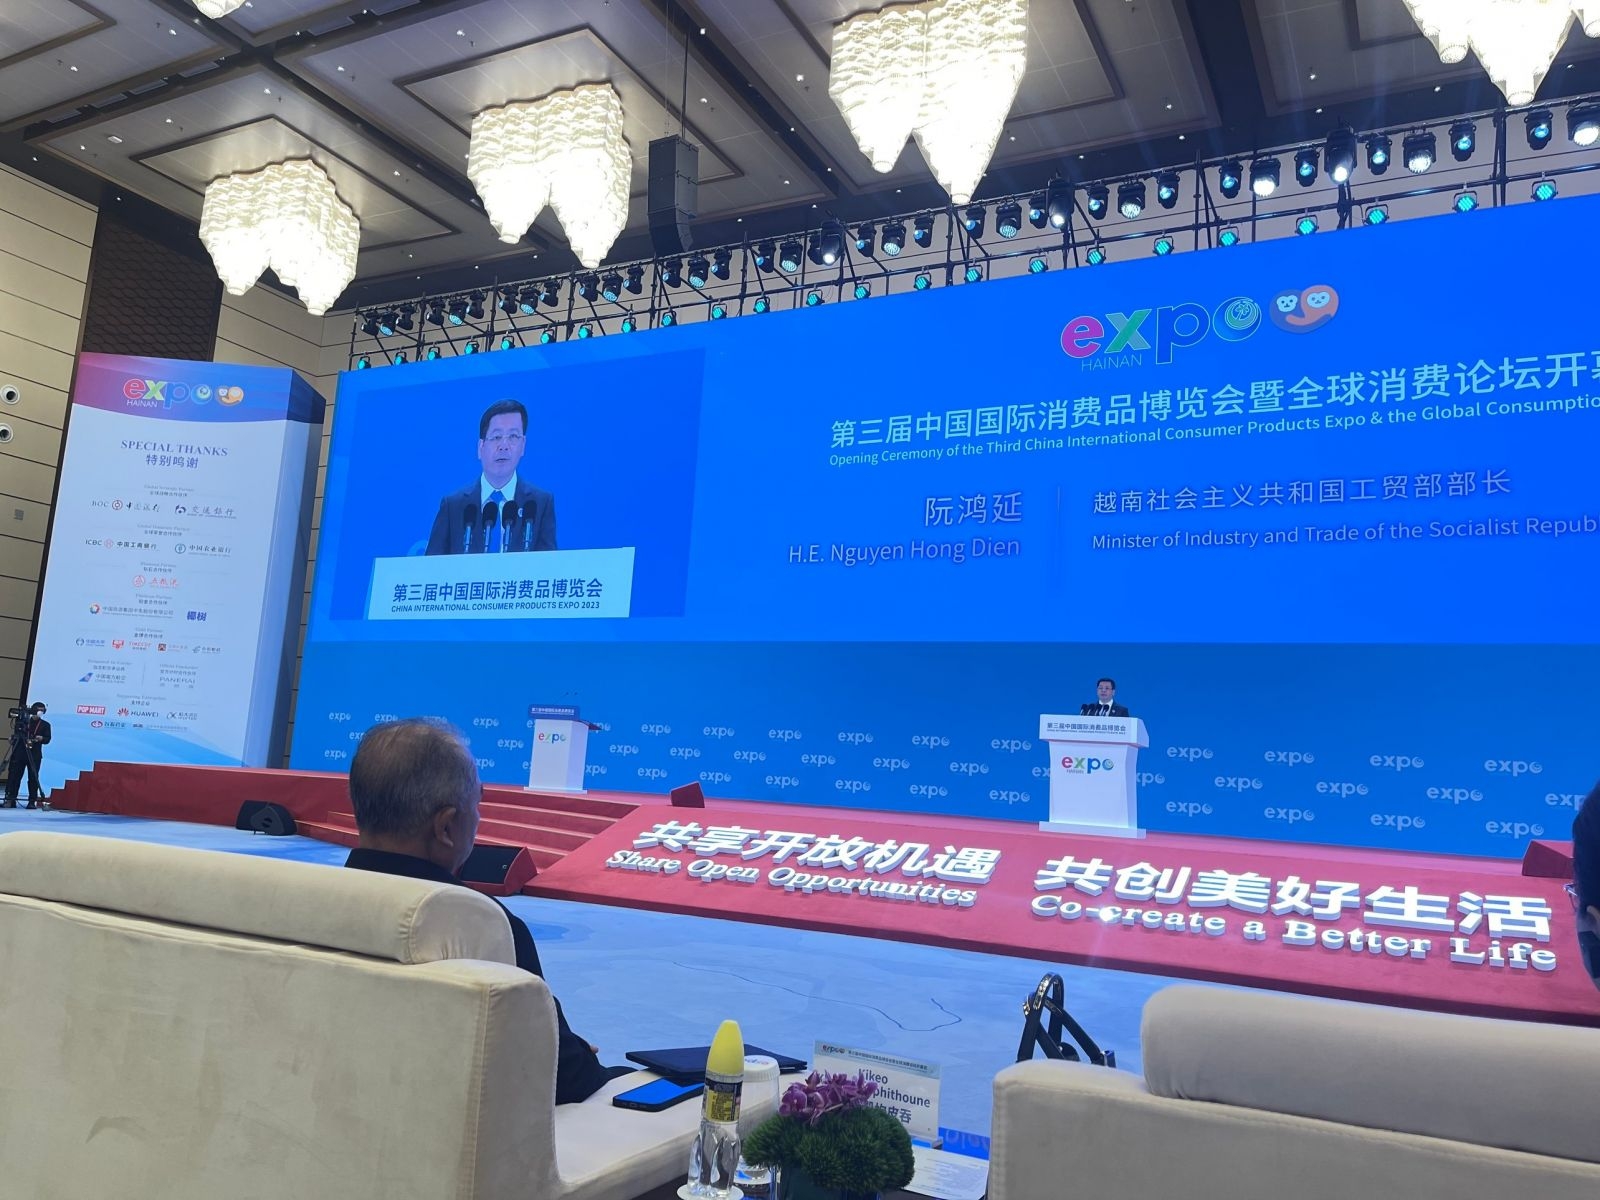 王文涛在会上表示高度支持两部密切协调，促进双边贸易活动。